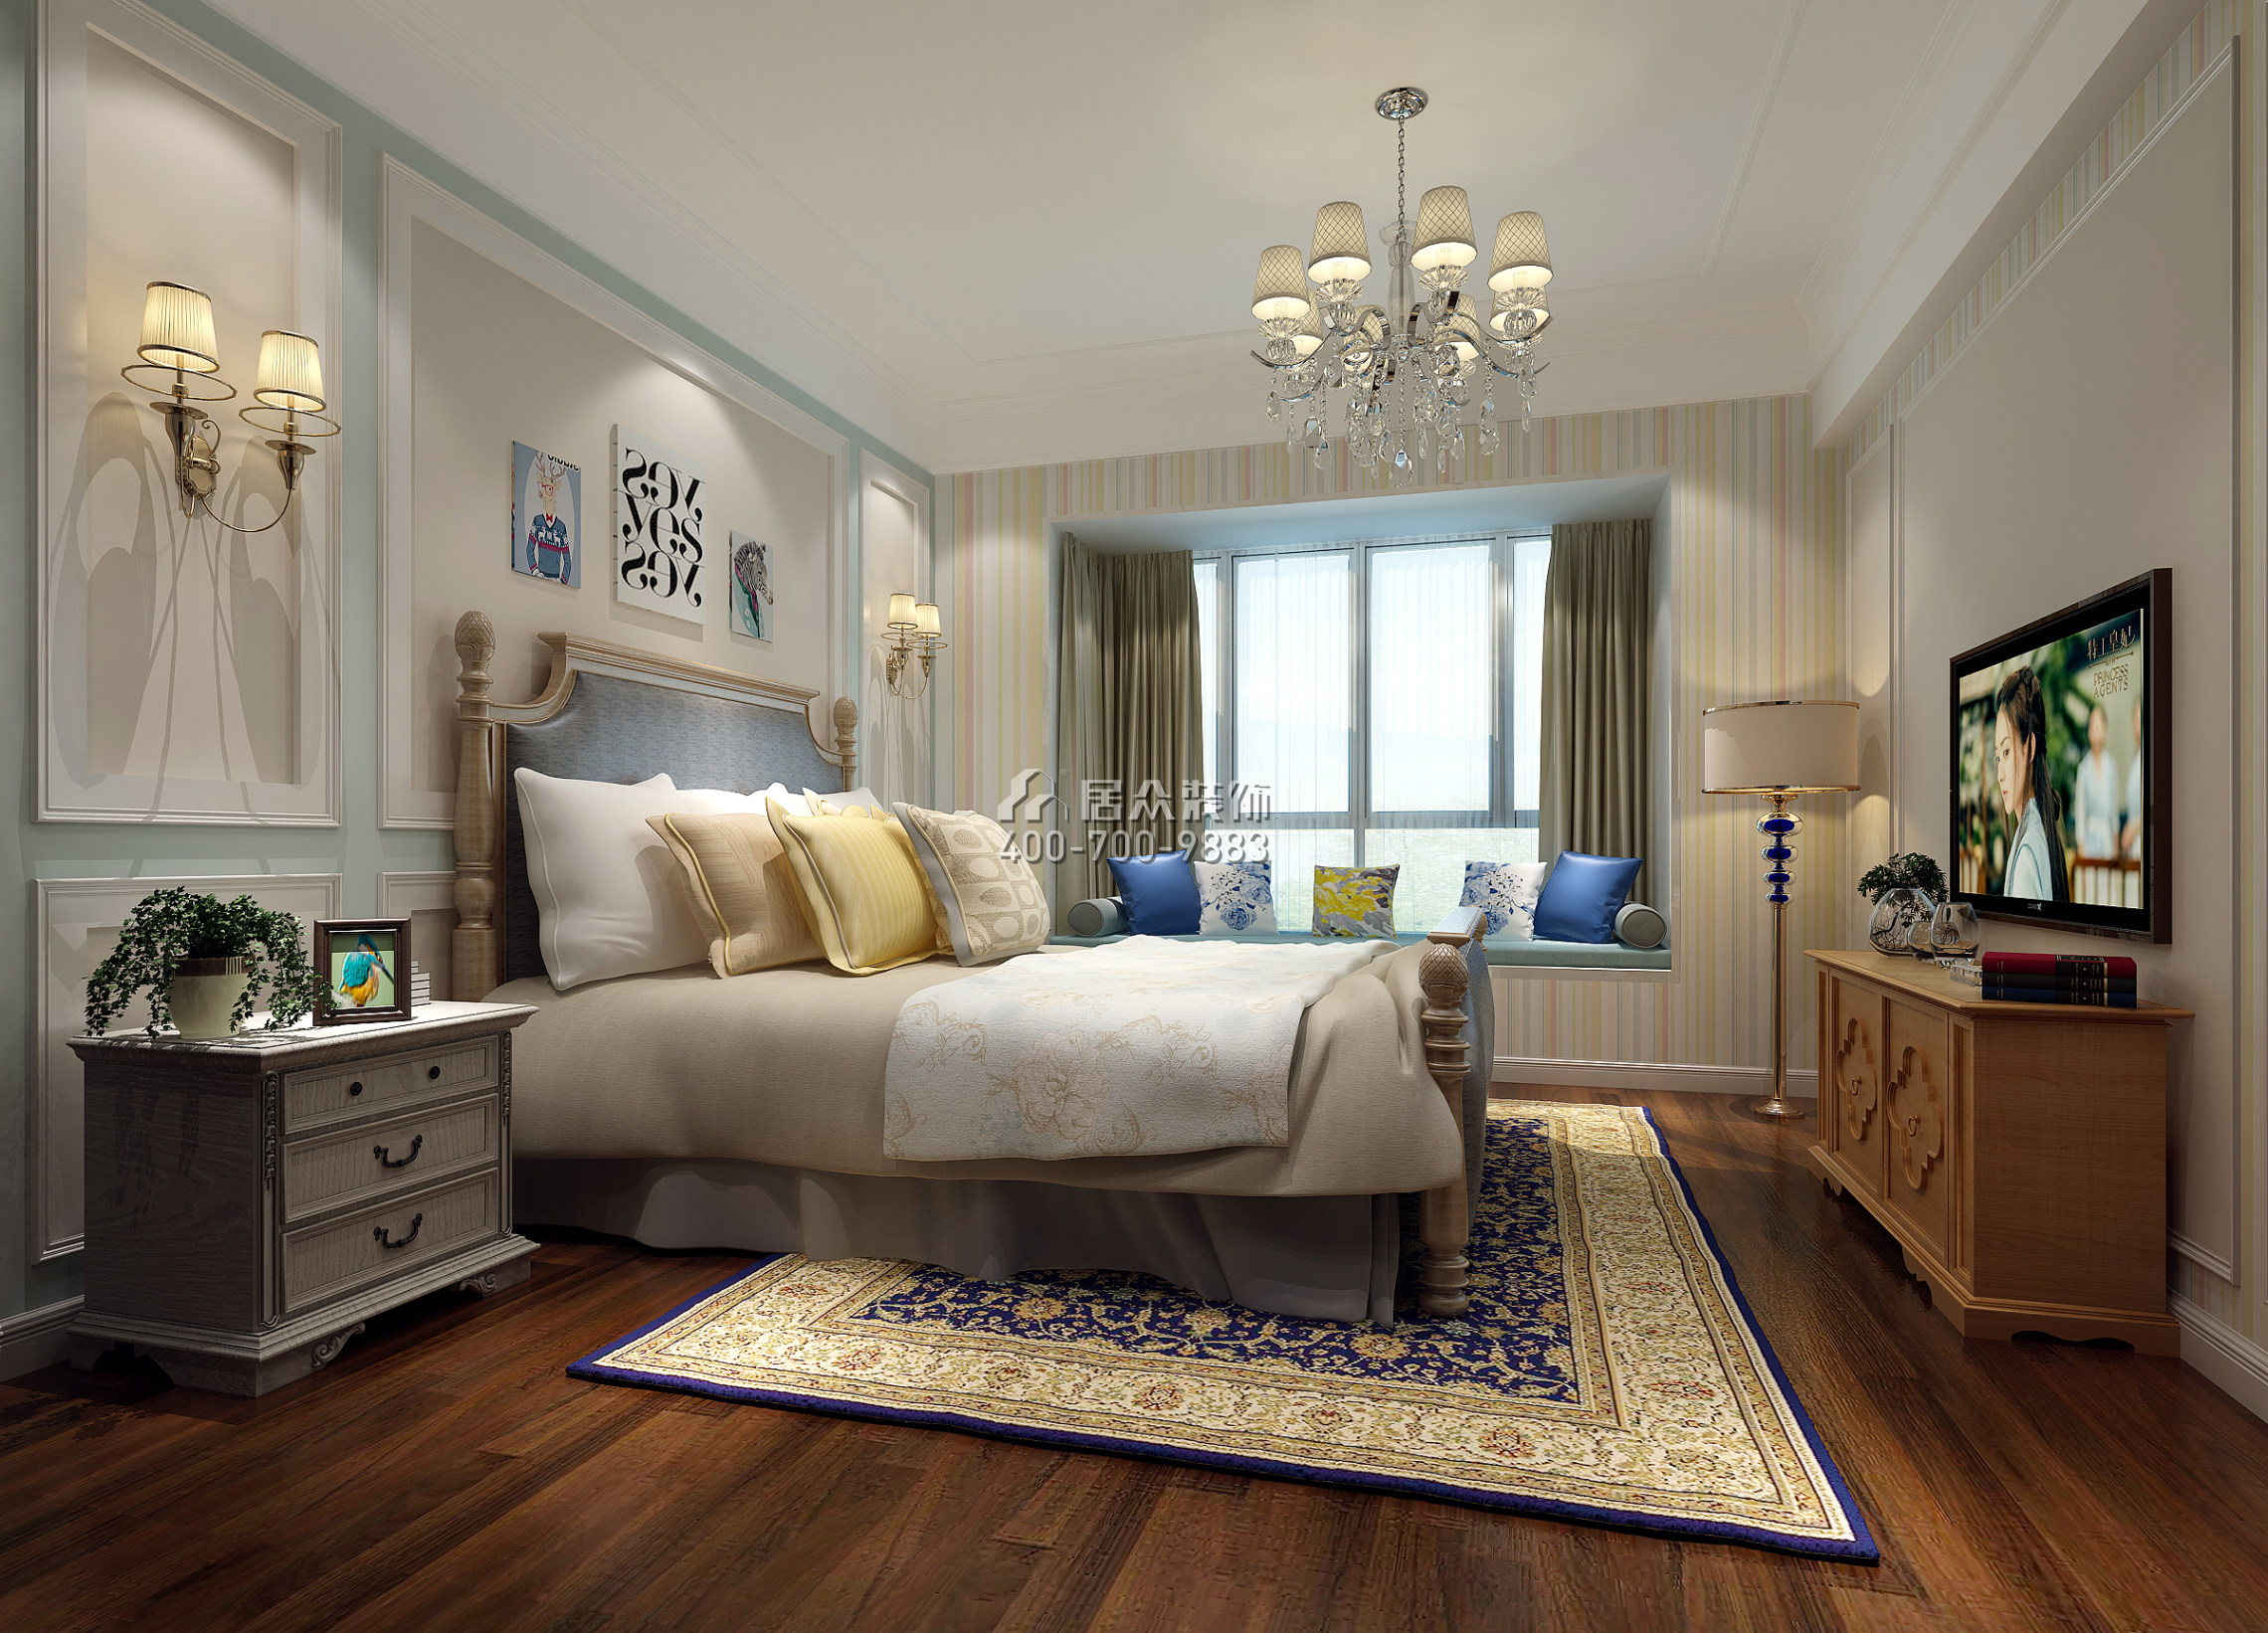 珊瑚天峰160平方米现代简约风格平层户型卧室装修效果图